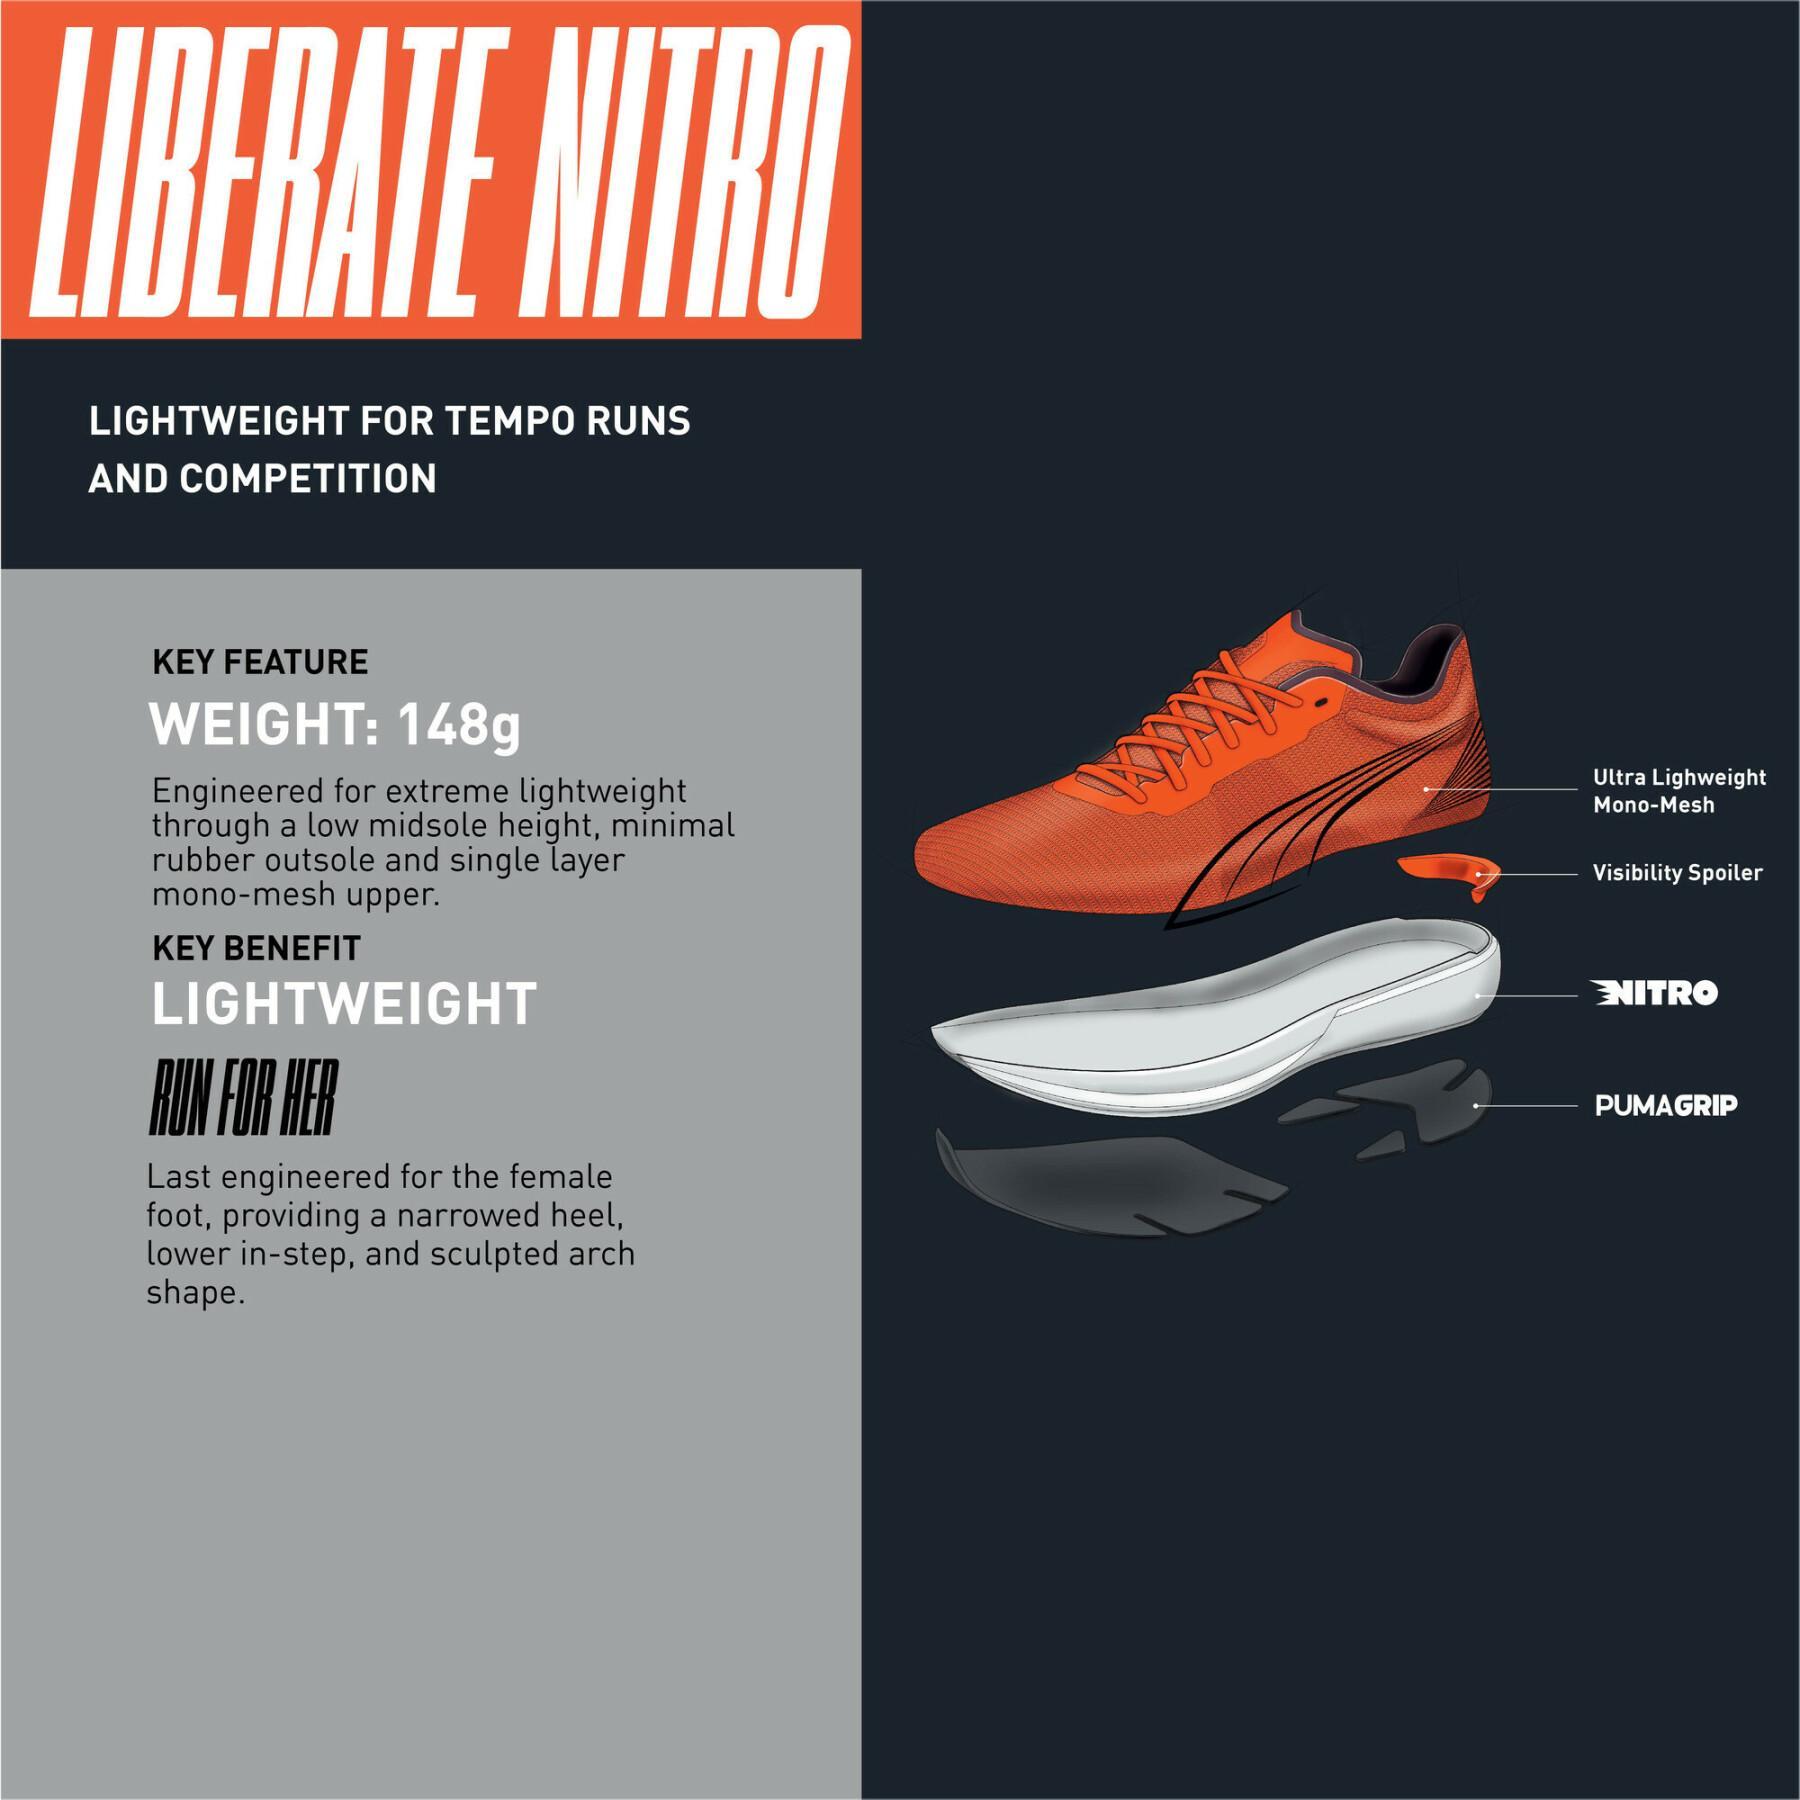 Buty do biegania dla kobiet Puma Liberate Nitro